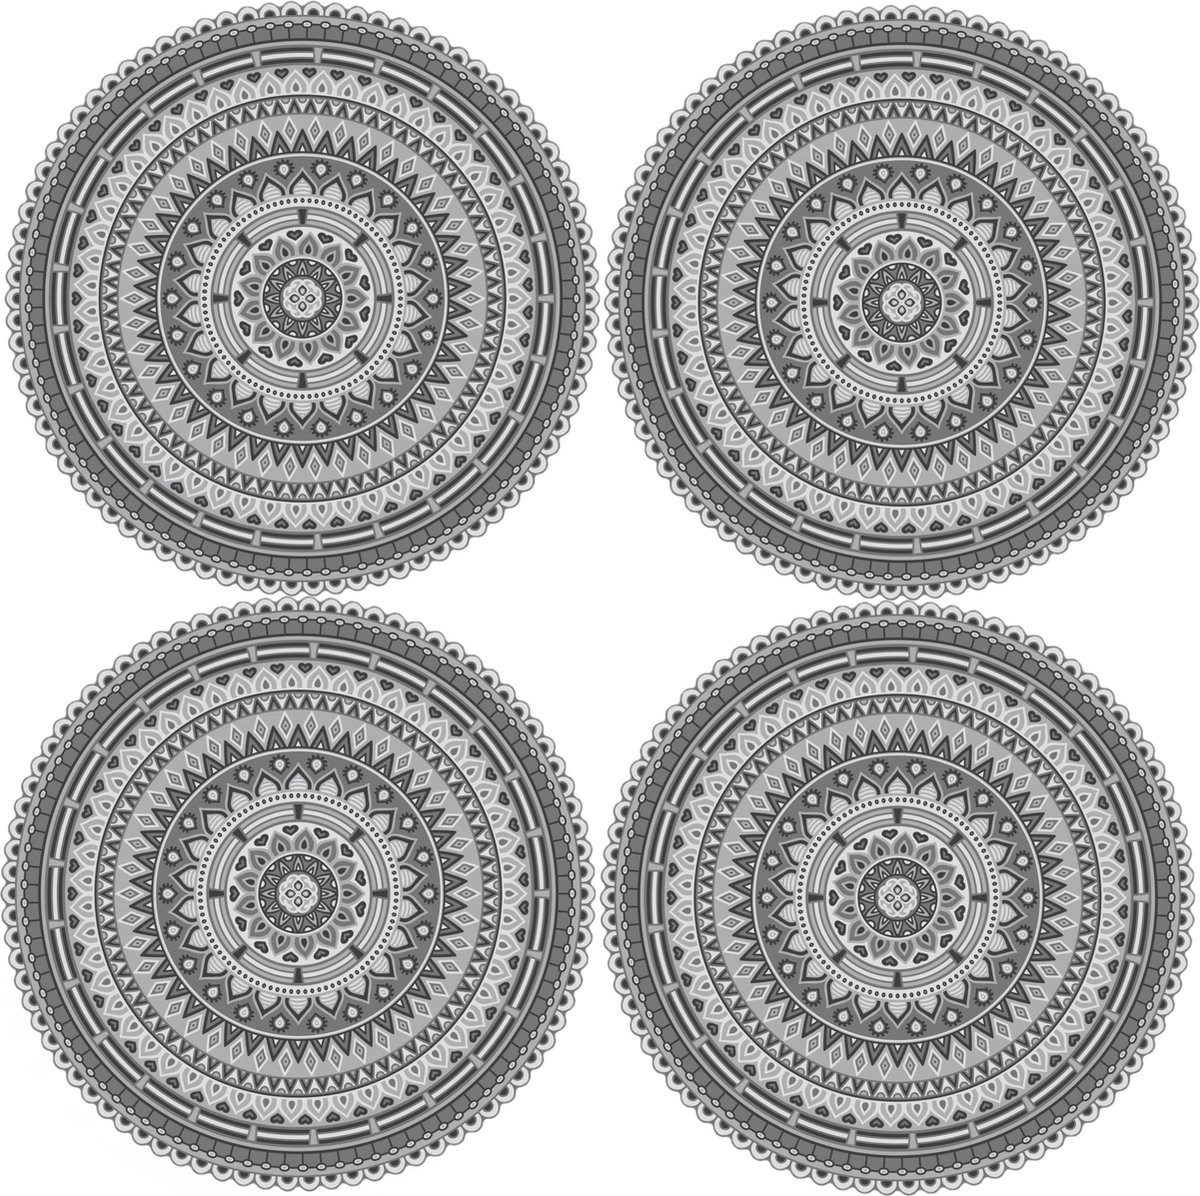 8x stuks Ibiza stijl ronde grijze placemats van vinyl D38 cm - Antislip/waterafstotend - Stevige top kwaliteit